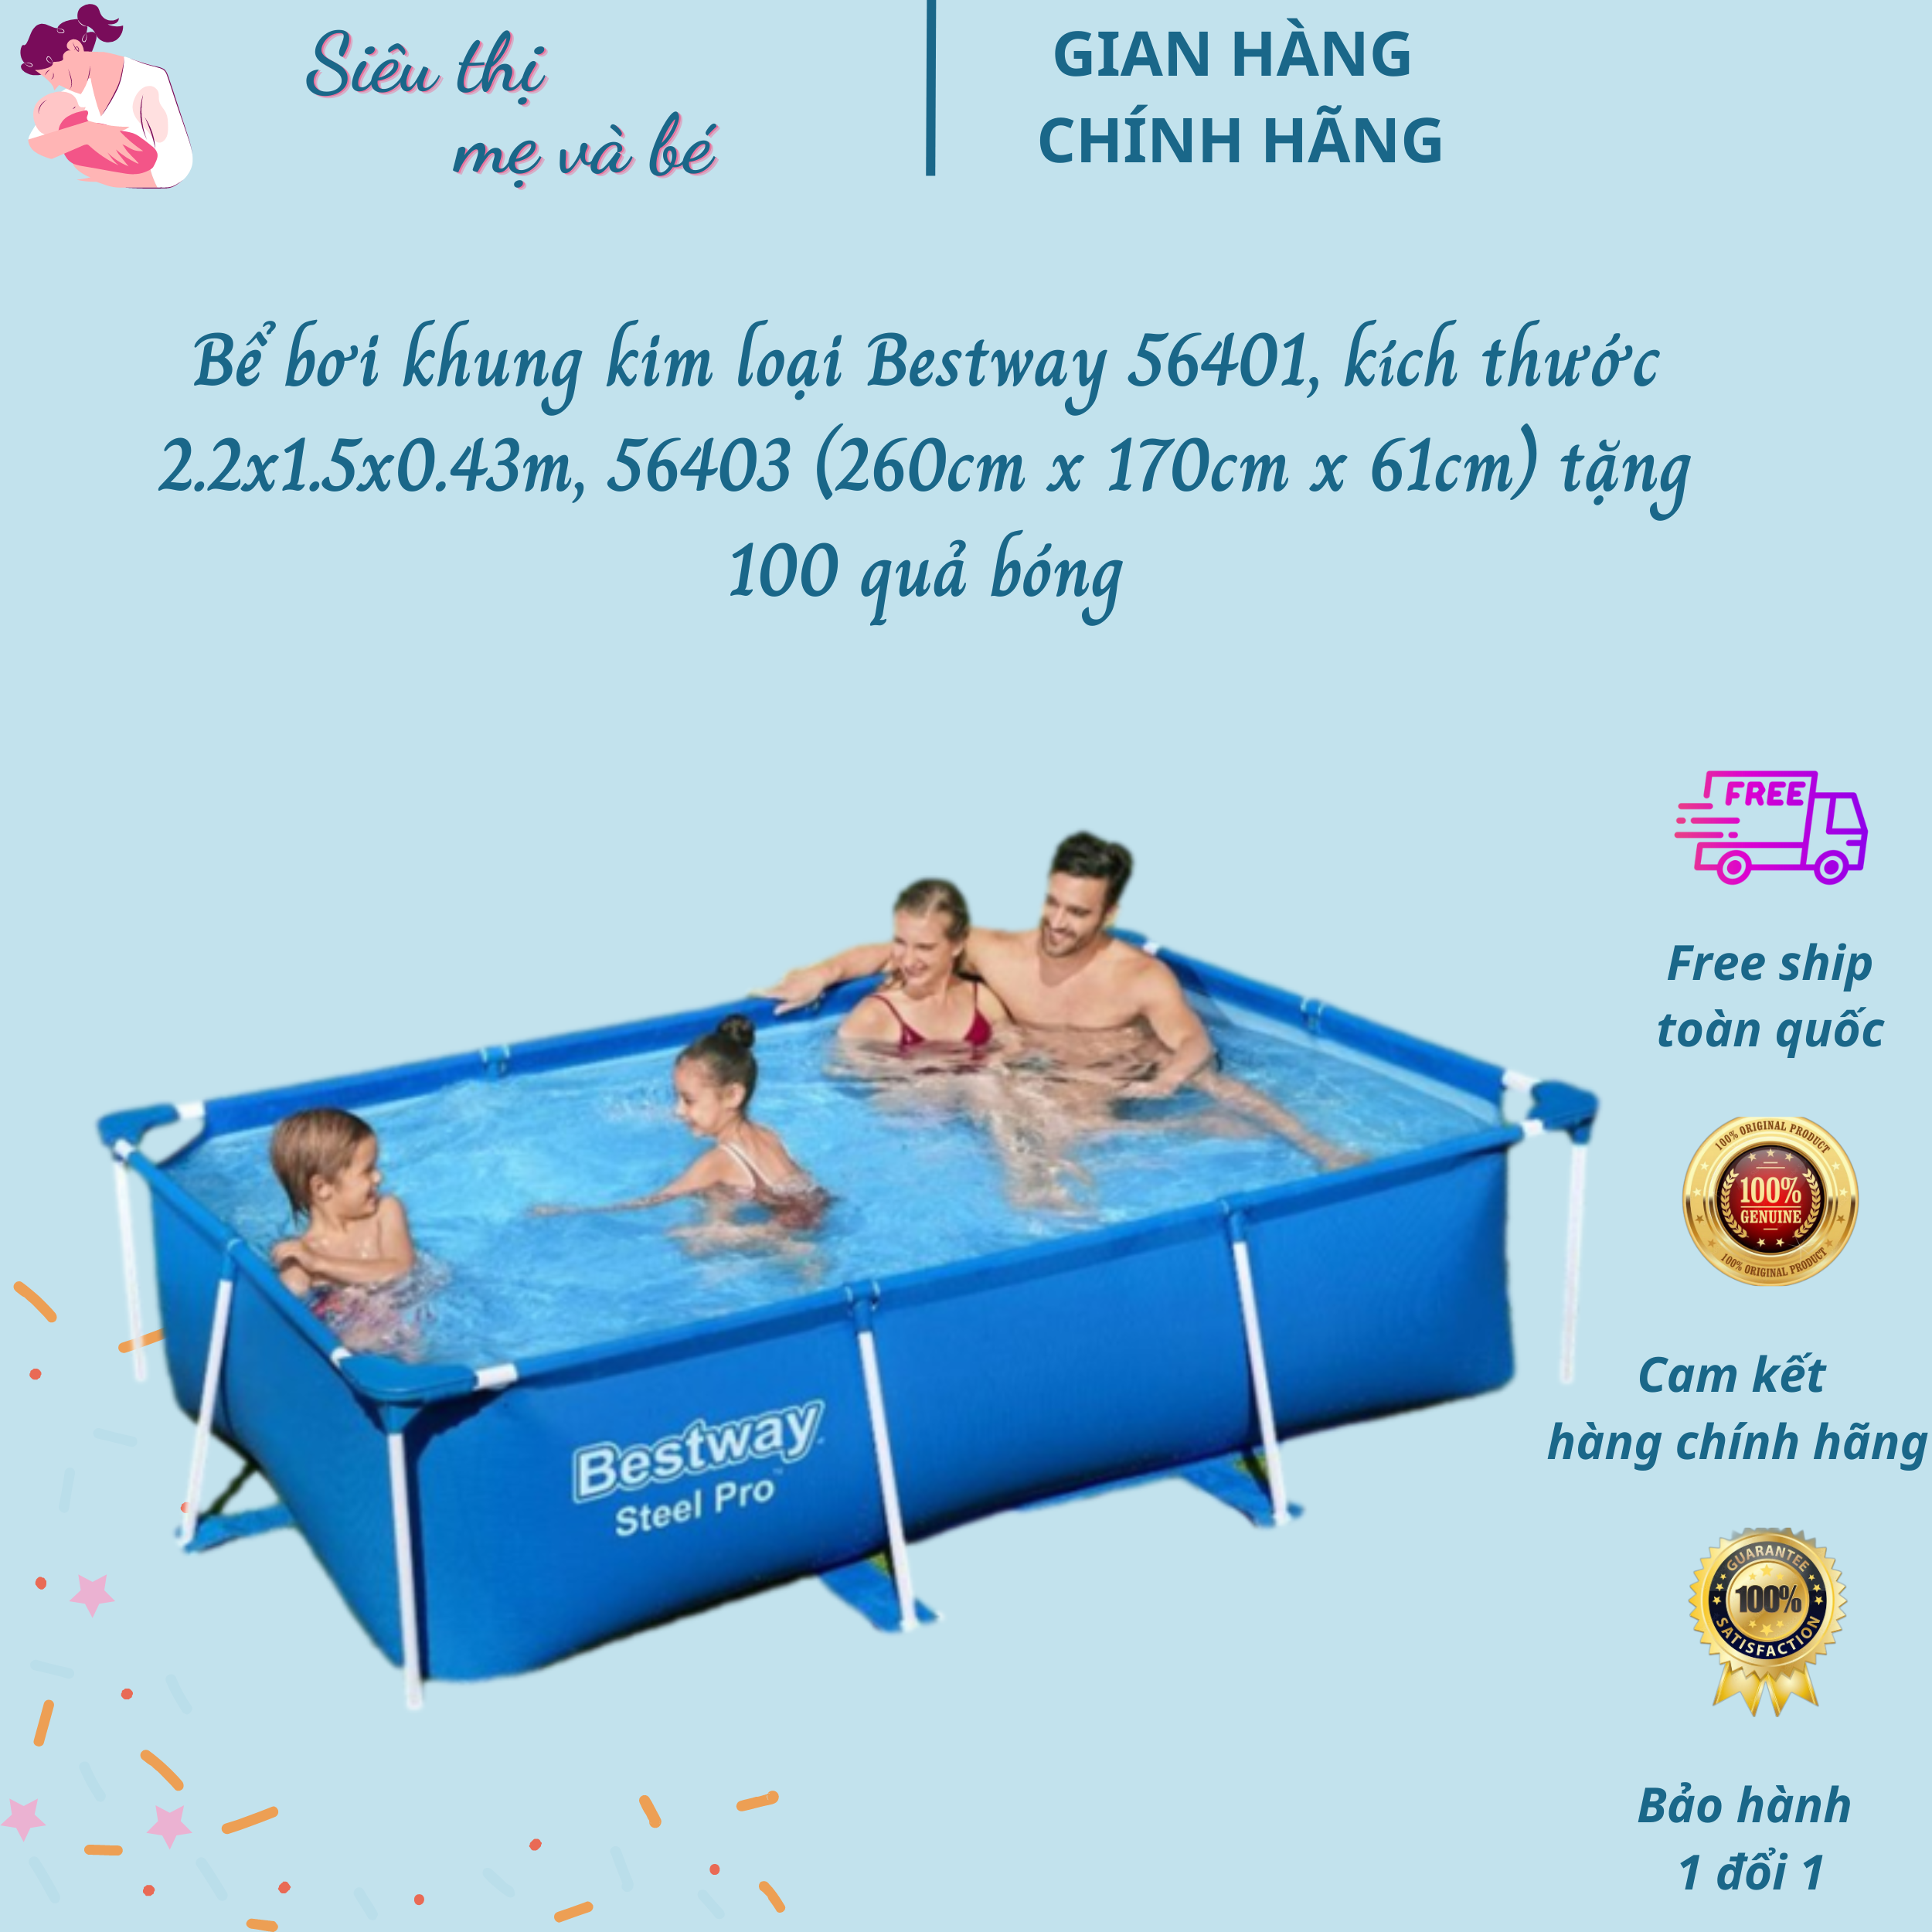 Bể bơi khung kim loại Bestway 56401, kích thước 2.2x1.5x0.43m